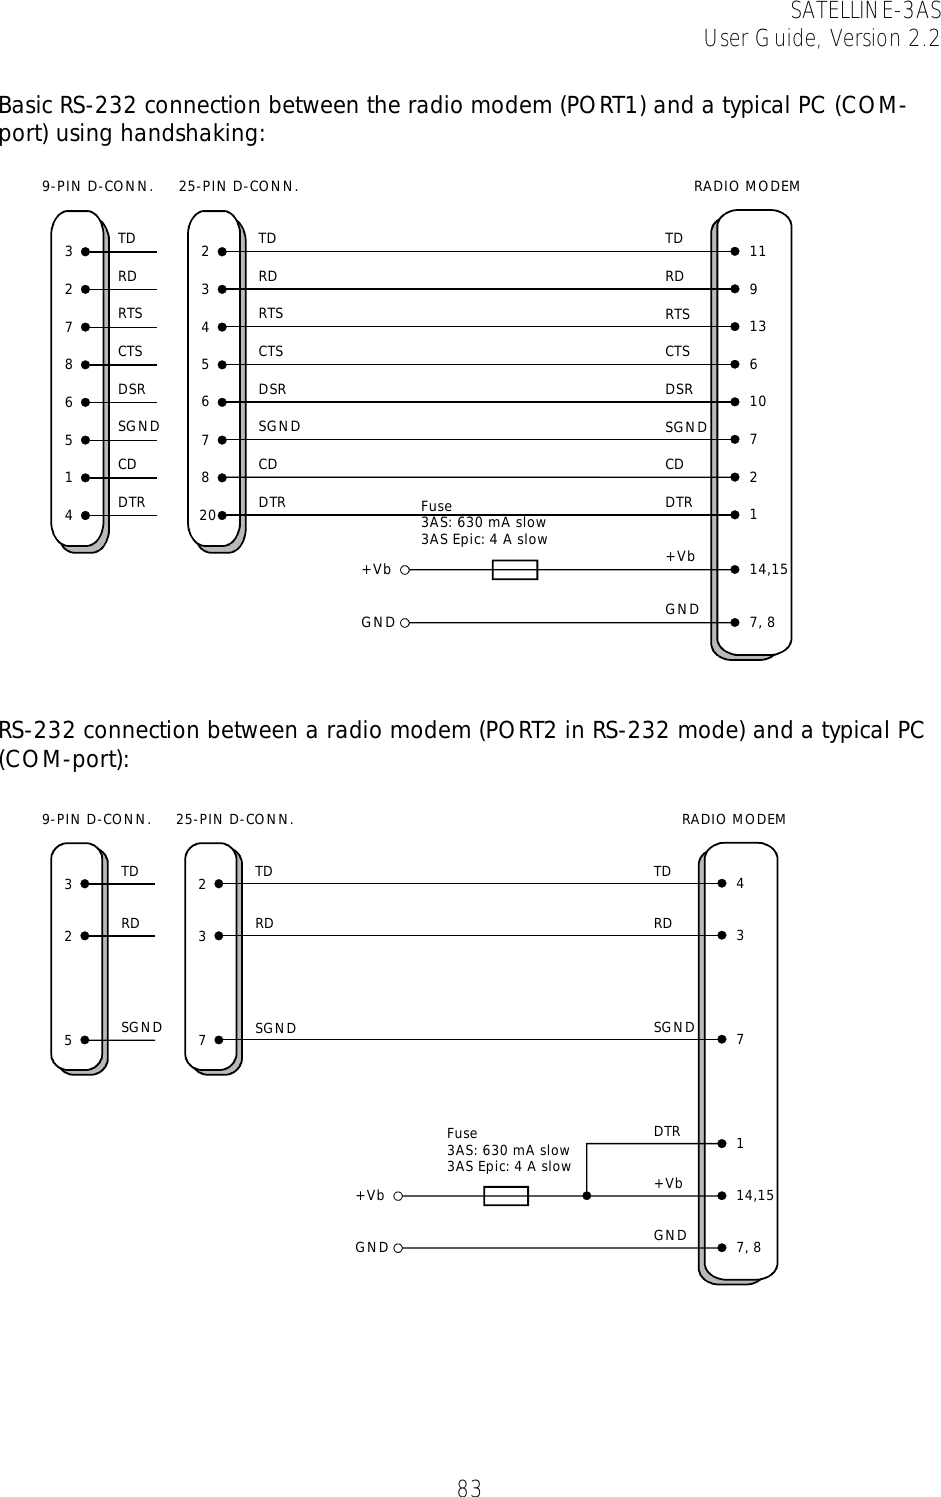 SATELLINE-3AS User Guide, Version 2.2   83 Basic RS-232 connection between the radio modem (PORT1) and a typical PC (COM-port) using handshaking:    RS-232 connection between a radio modem (PORT2 in RS-232 mode) and a typical PC (COM-port):       9-PIN D-CONN. 25-PIN D-CONN. RADIO MODEM14,157, 8+VbGND3 2 TD 11+VbGND2 3 RD 97 4 RTS 138 5 CTS 666DSR 105 7 SGND 71 8 CD 2420 DTR 1TDRDRTSCTSDSRSGNDCDDTRTDRDRTSCTSDSRSGNDCDDTR Fuse 3AS: 630 mA slow3AS Epic: 4 A slow325TDRDSGND9-PIN D-CONN.237TDRDSGND25-PIN D-CONN.TDRDSGND4RADIO MODEM37114,157, 8DTR+VbGND+VbGNDFuse 3AS: 630 mA slow3AS Epic: 4 A slow